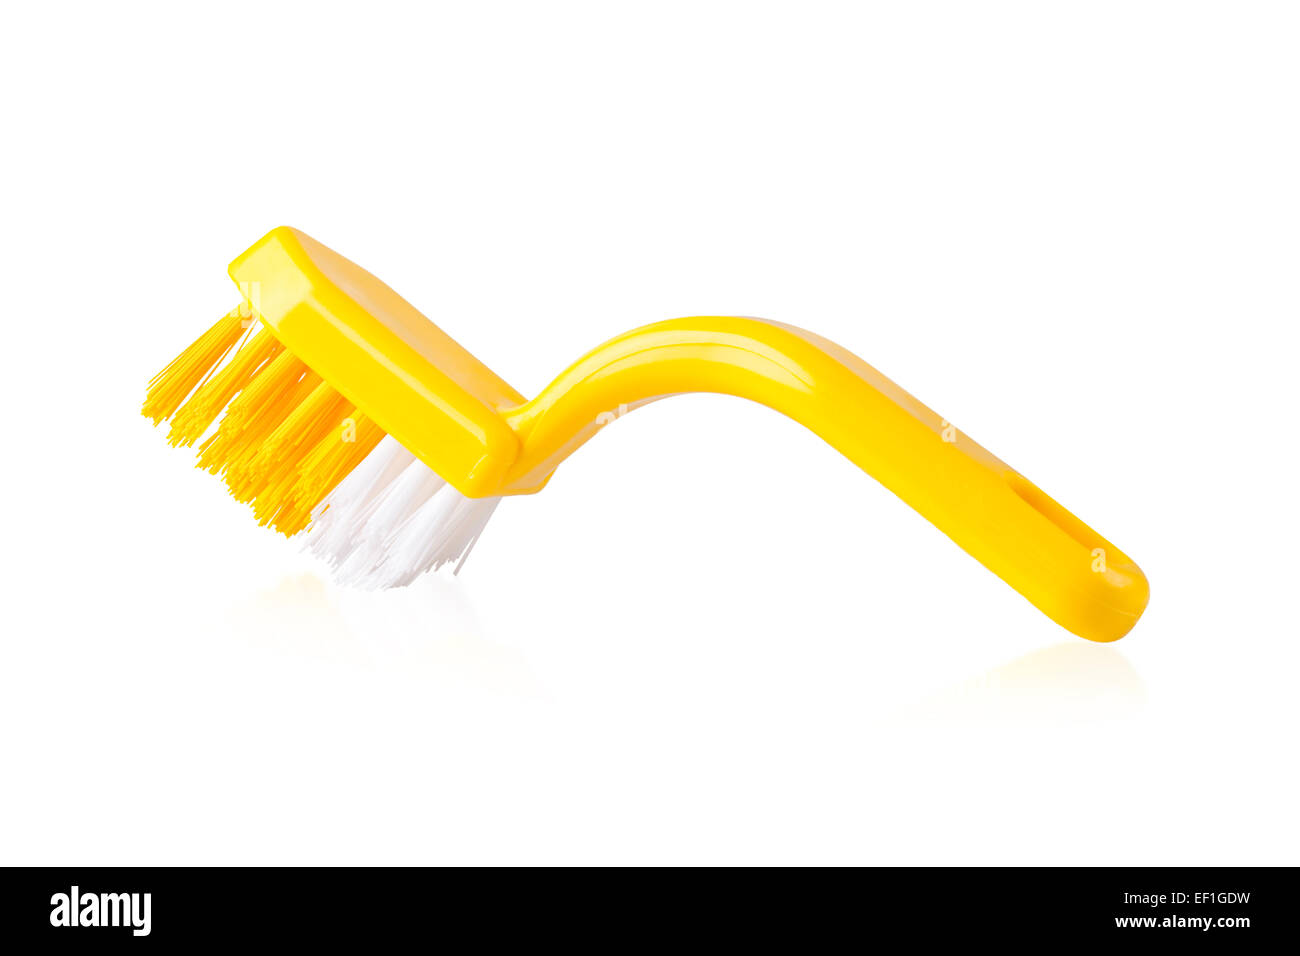 Gelber Kunststoff Reinigungsbürste auf weißem Hintergrund Stockfoto